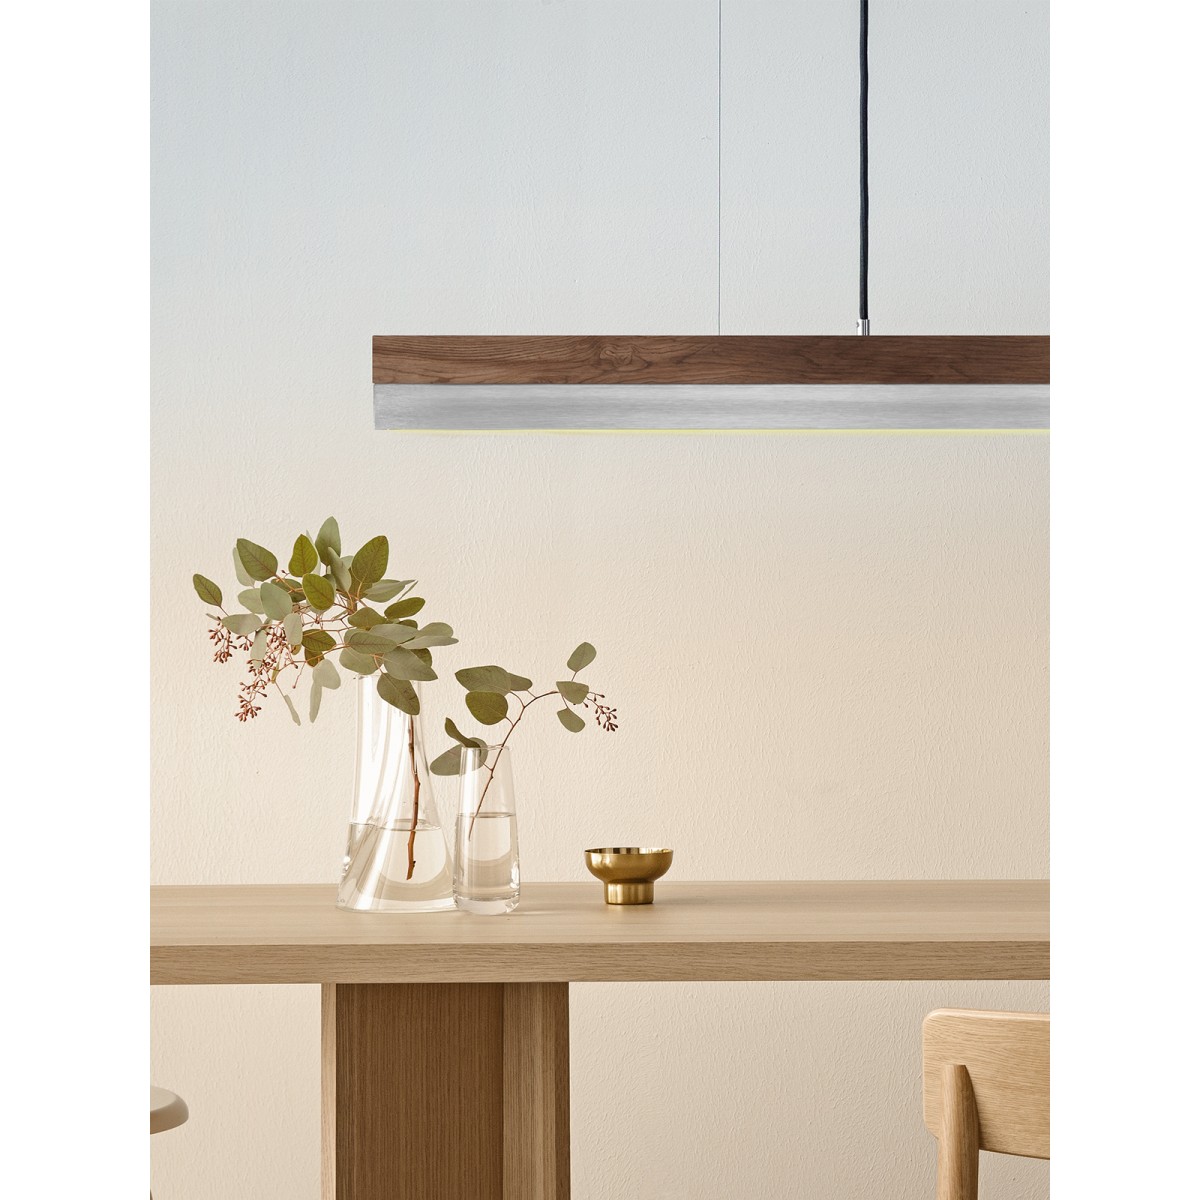 GANTlights - Beton Hängeleuchte [C-Serie]Stainless Lampe minimalistisch